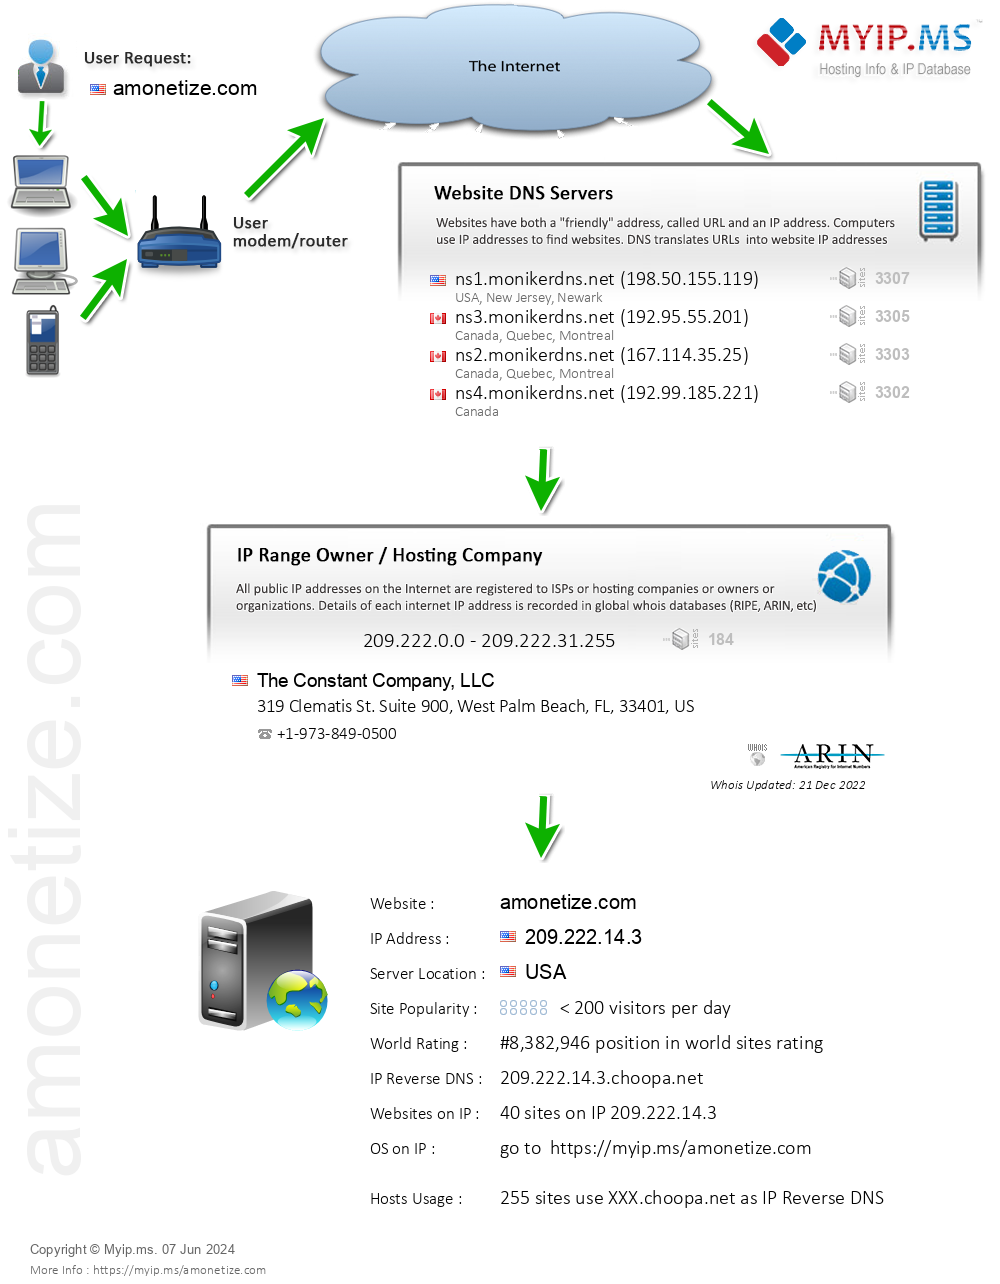 Amonetize.com - Website Hosting Visual IP Diagram